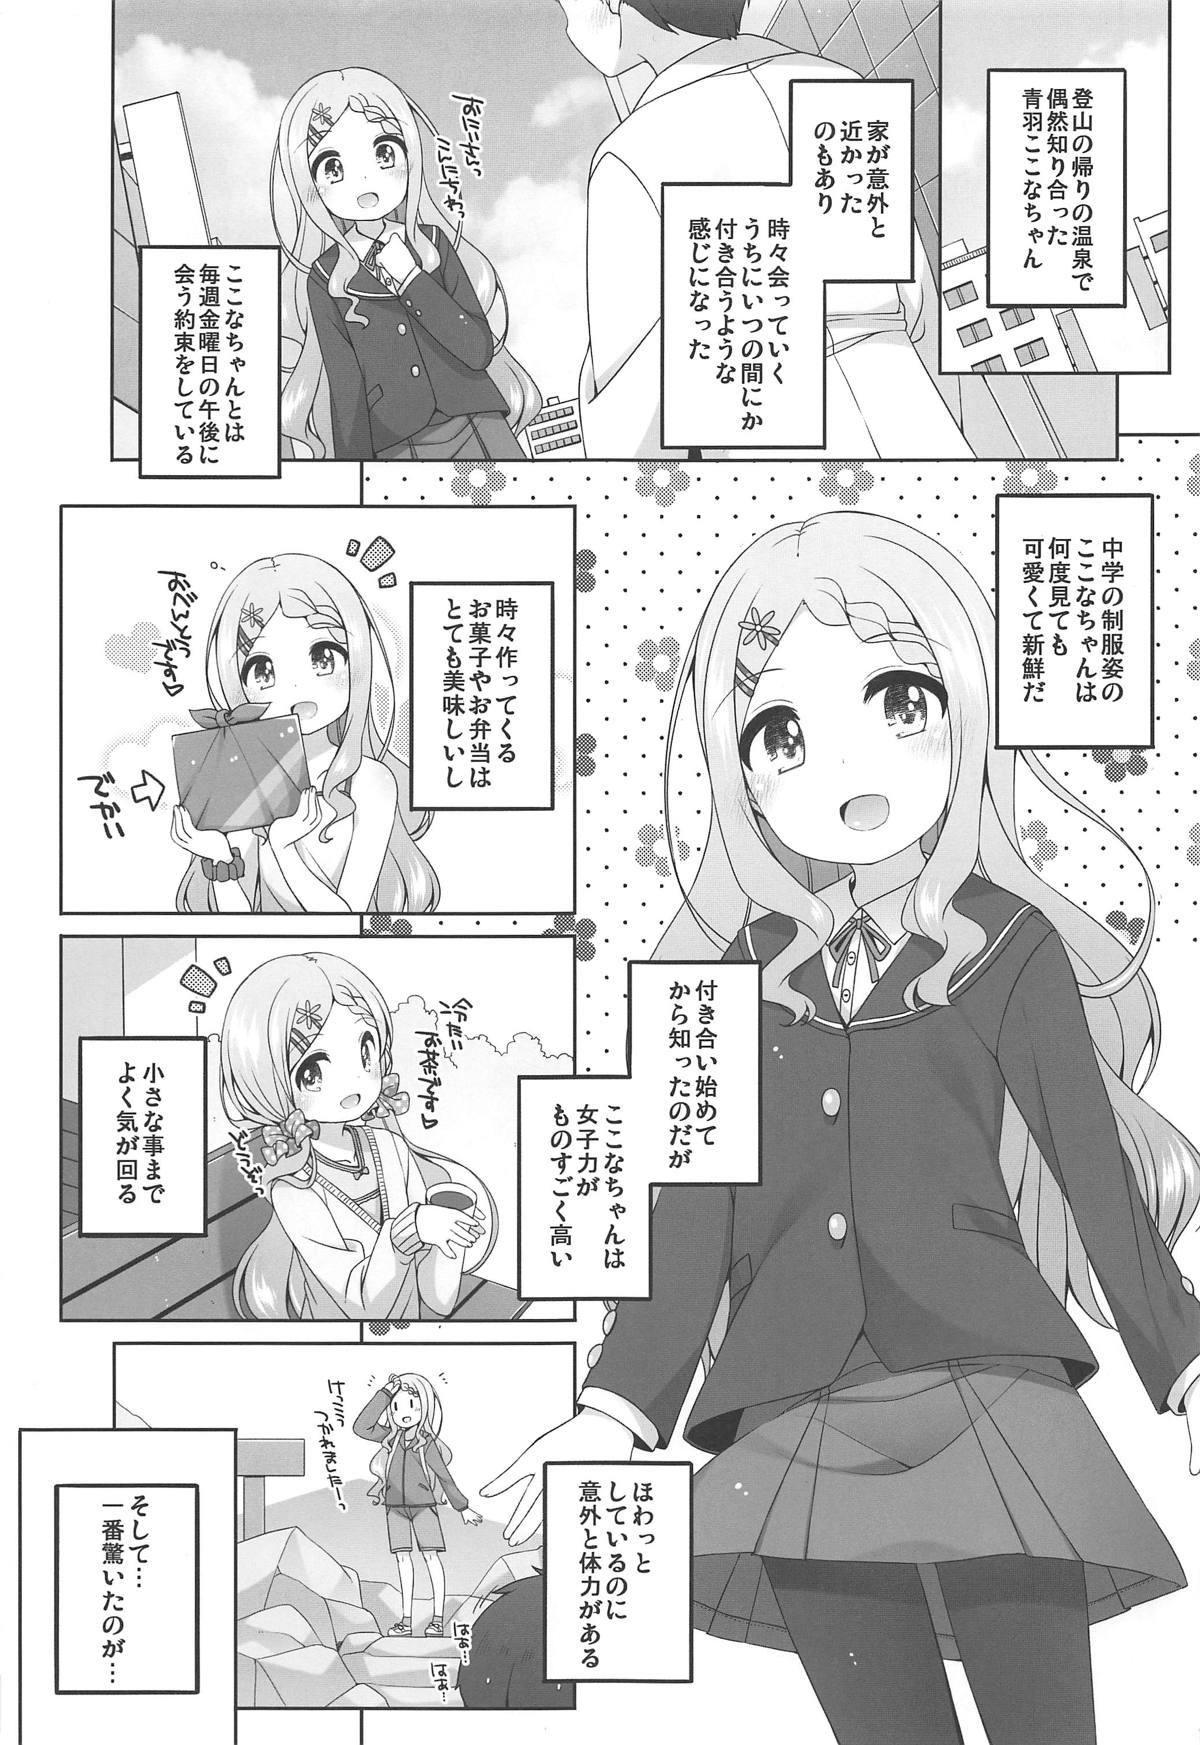 Group Kokona-chan Kawaii. - Yama no susume Analplay - Page 4